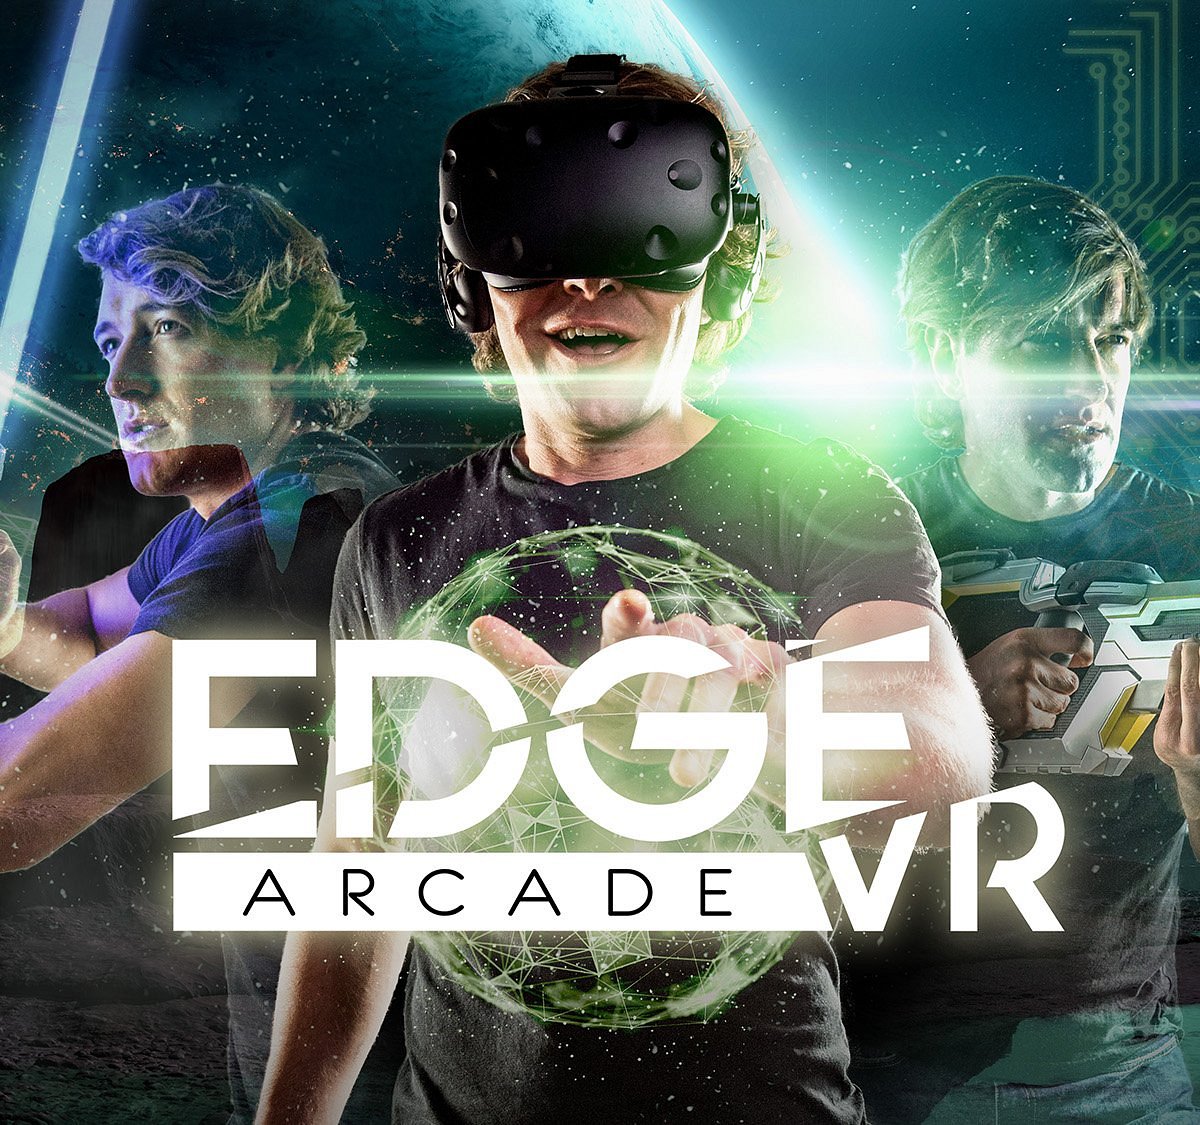 Edge vr. Piehead Arcade VR. Arcade VR. Near Edge.